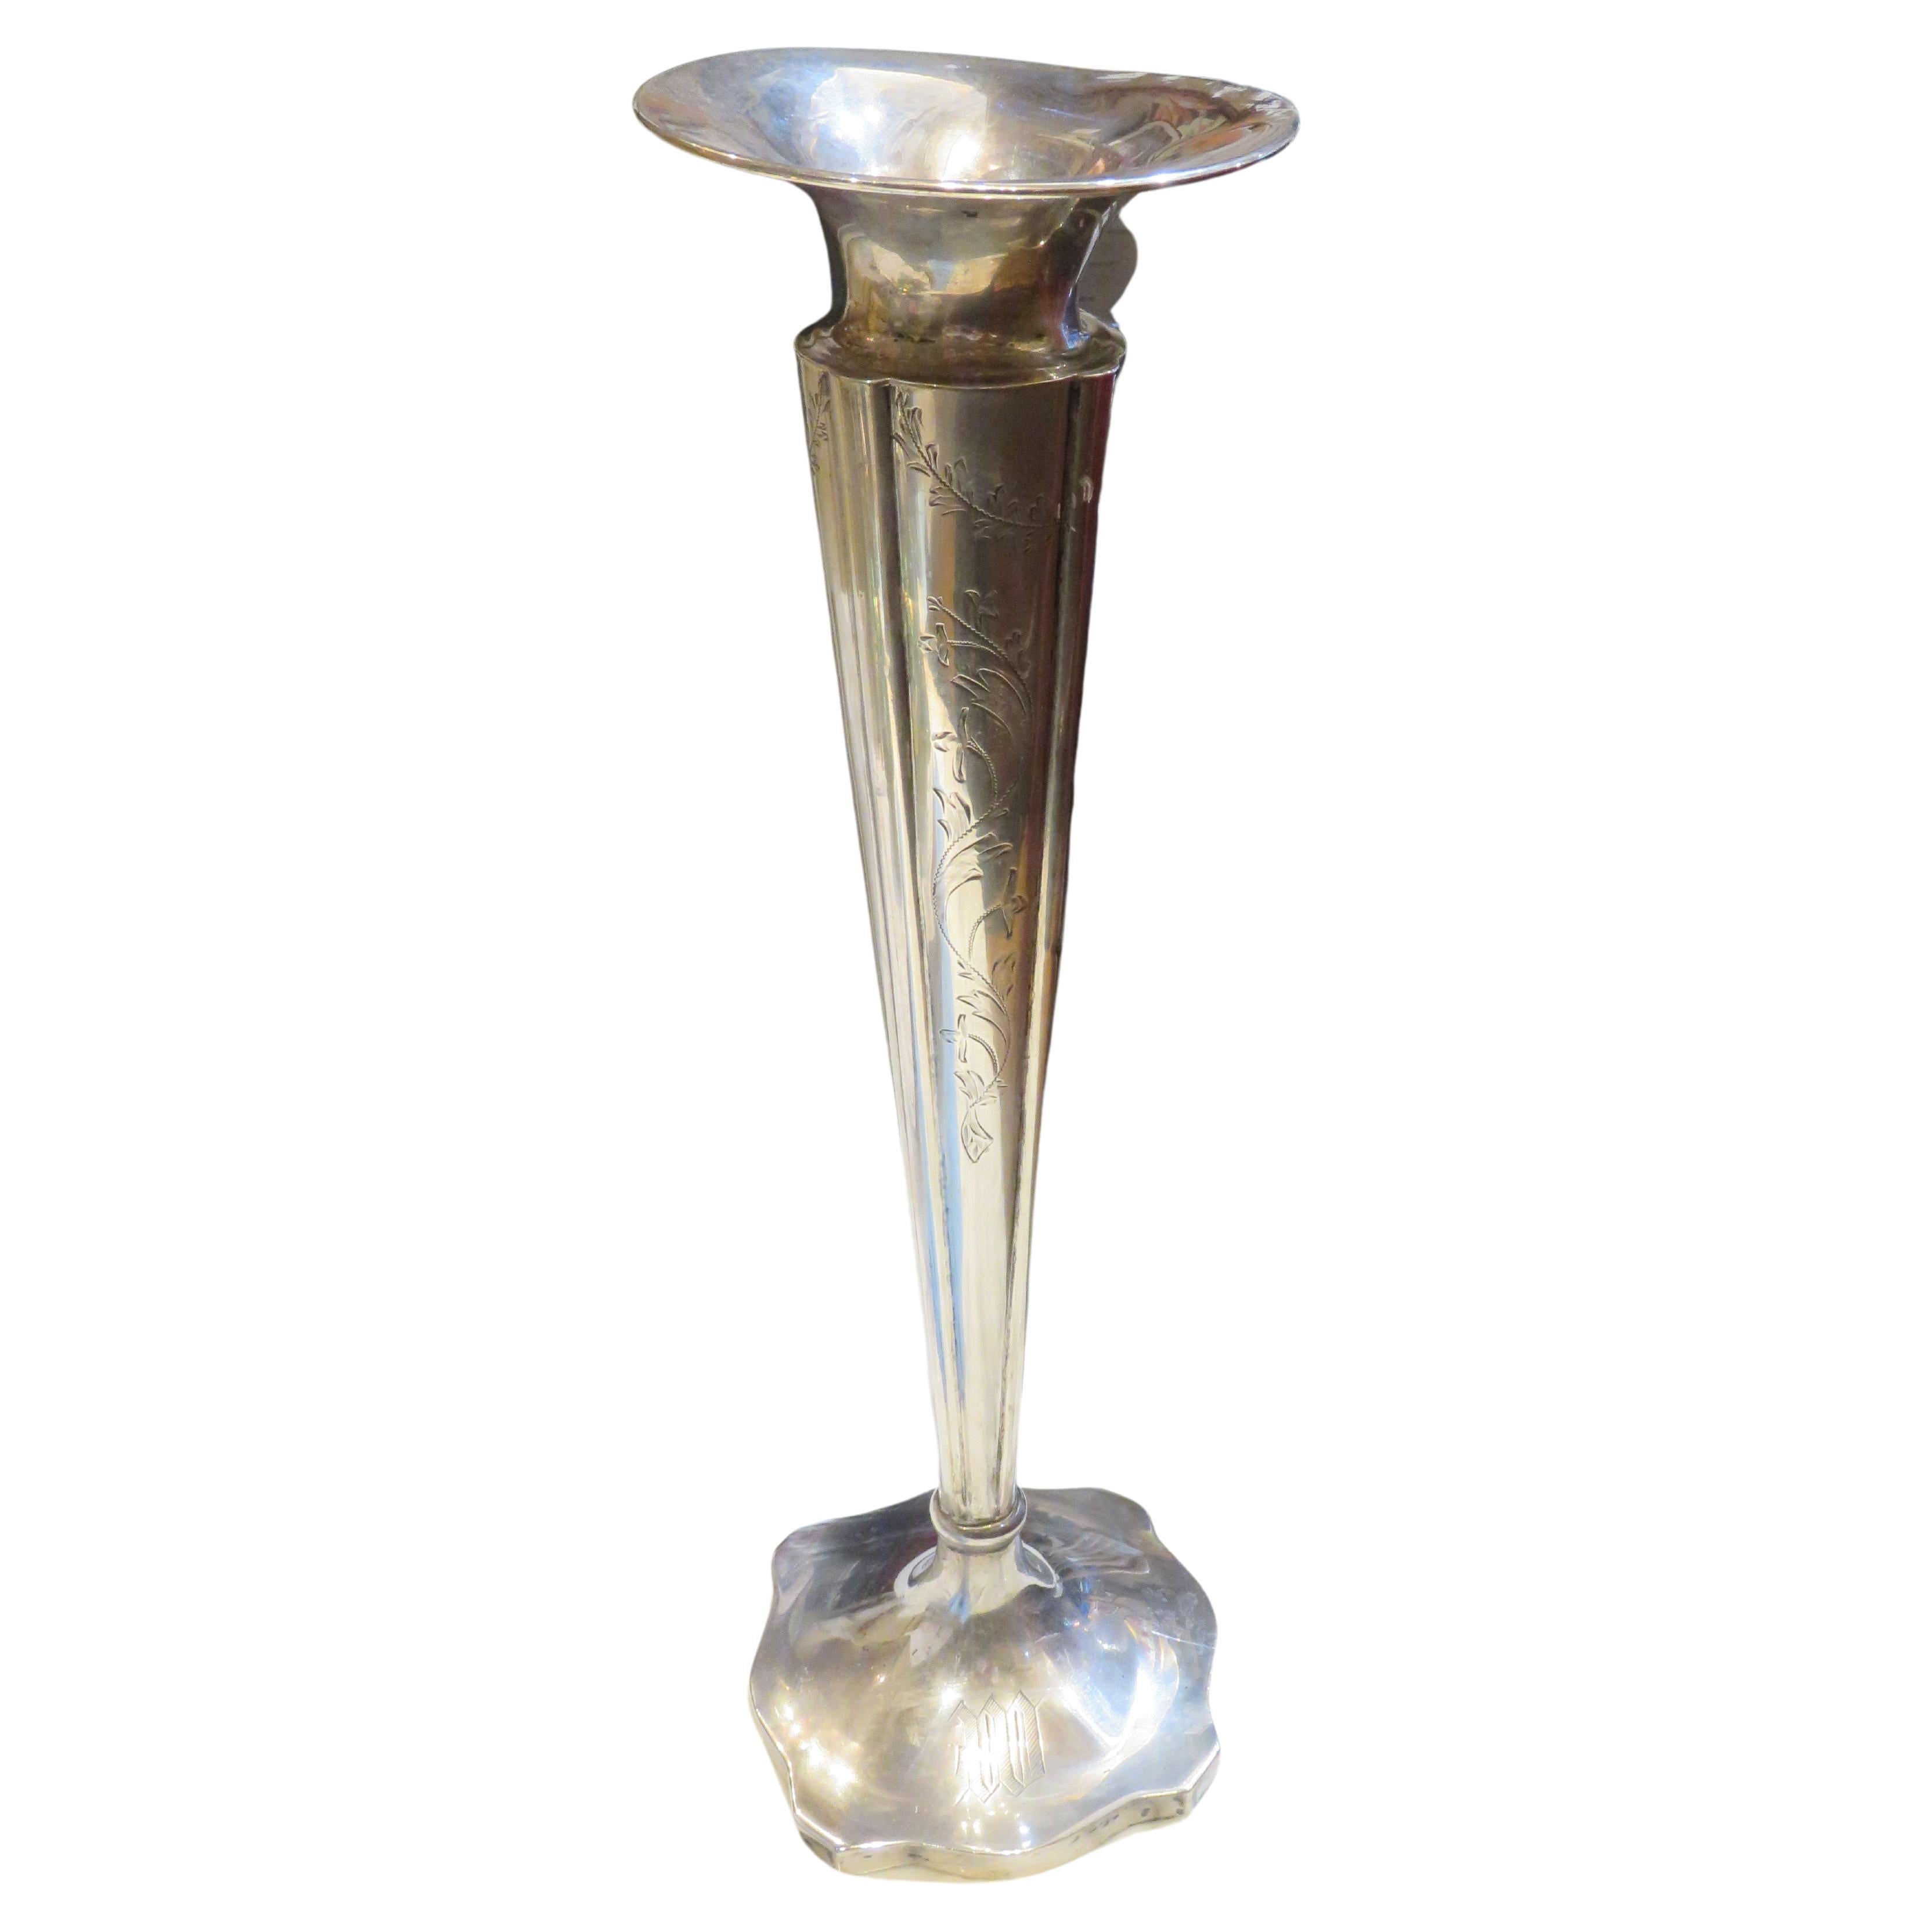 Raro vaso floreale francese in argento massiccio del 19° secolo